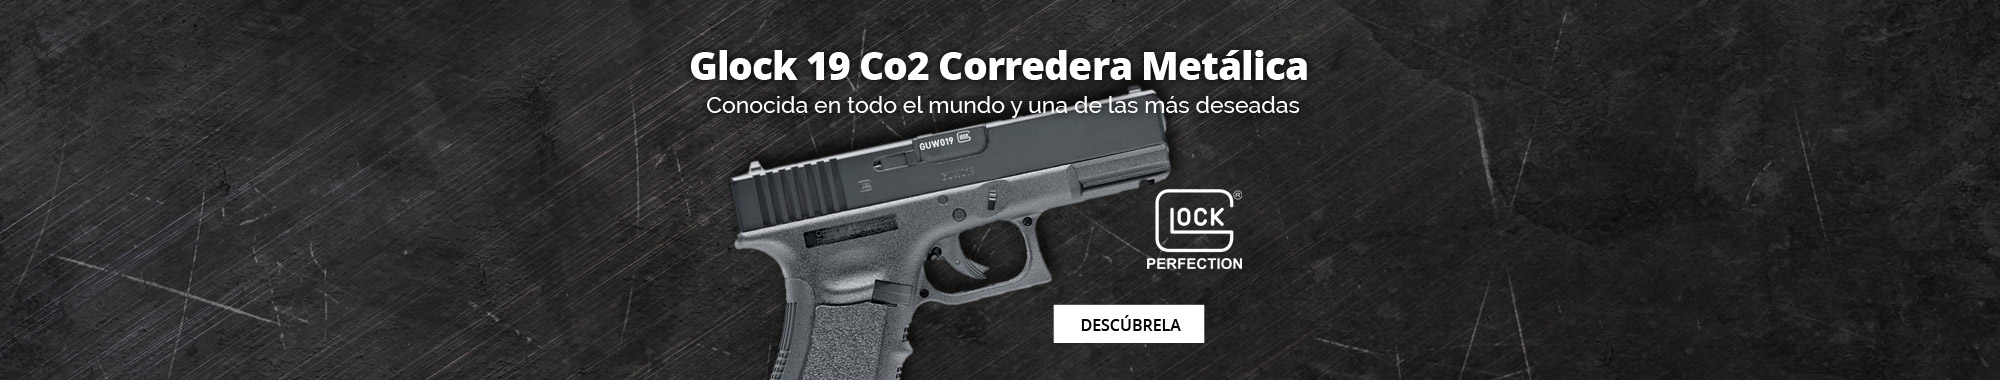 Glock 19 Co2 Corredera Metálica